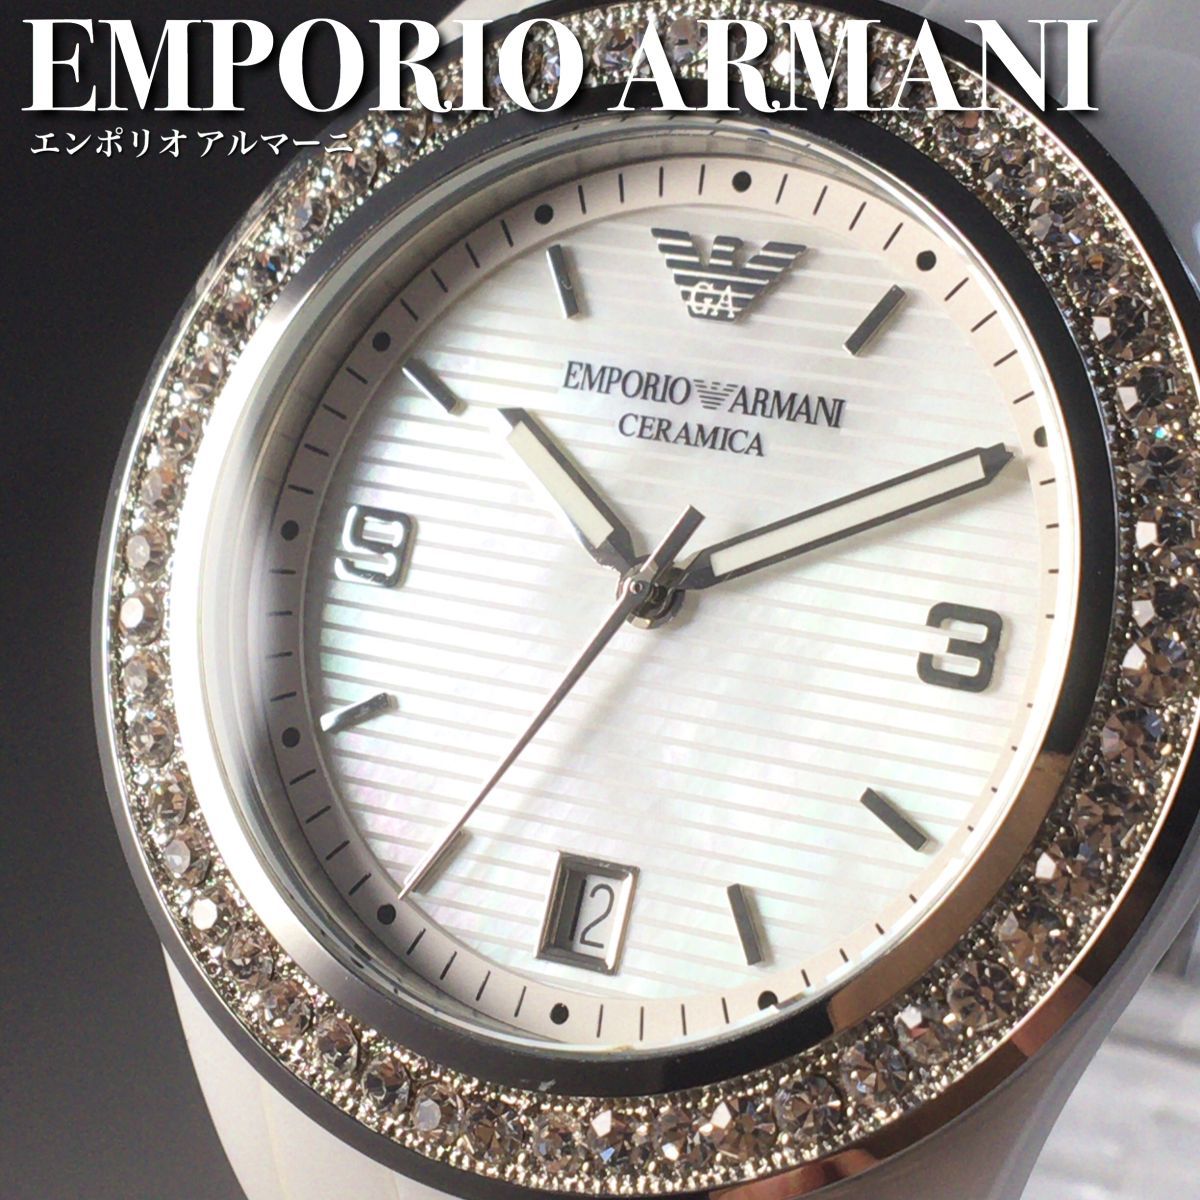 新品未使用 海外限定モデル 定価5.8万円 エンポリオ アルマーニ セラミック レディース腕時計 WW154902Y